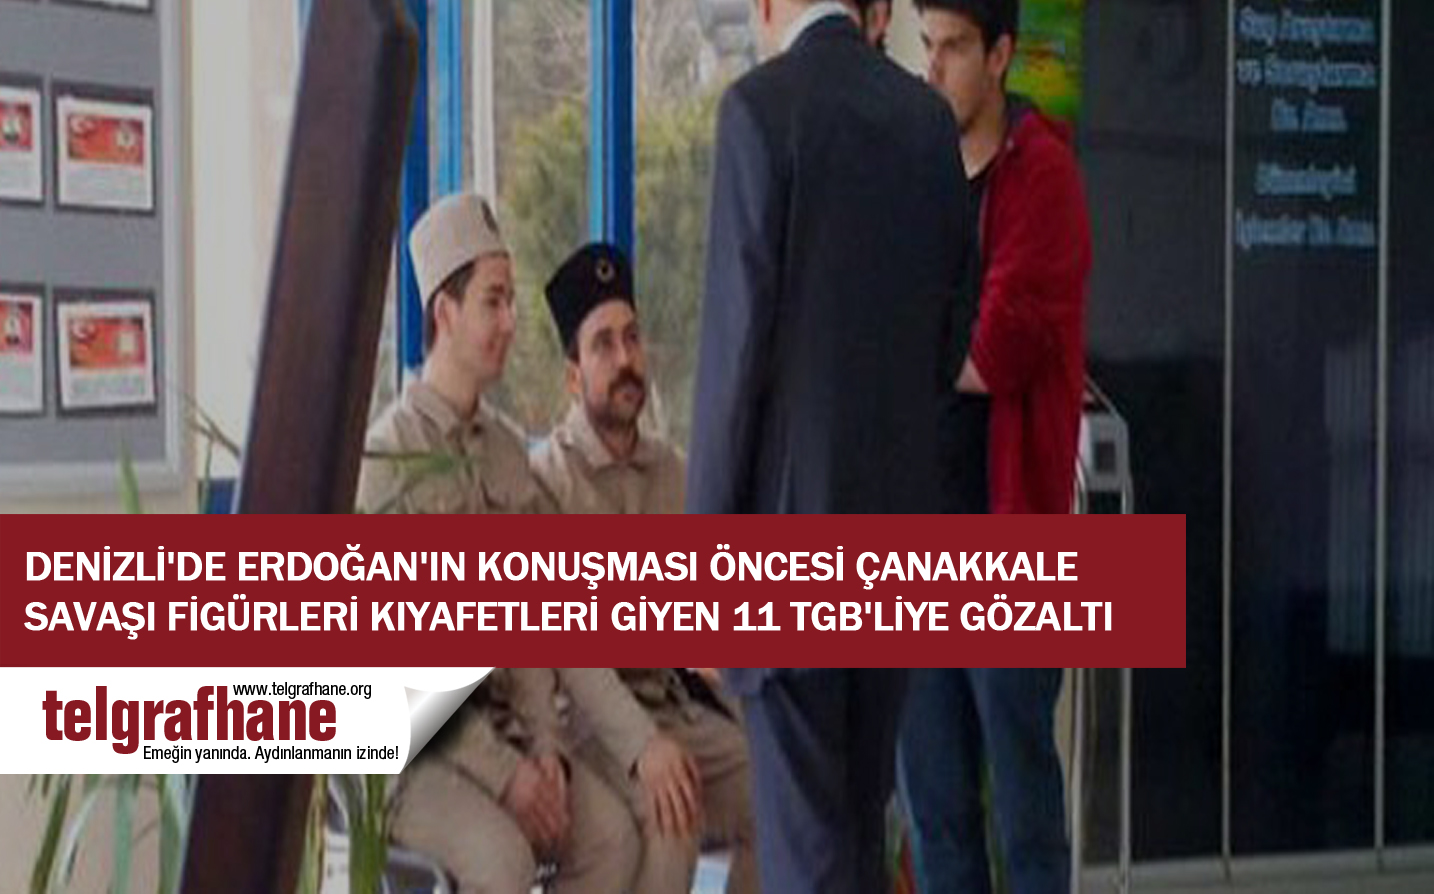 Denizli’de Erdoğan’ın konuşması öncesı Çanakkale Savaşı figürleri kıyafetleri giyen 11 TGB’liye gözaltı